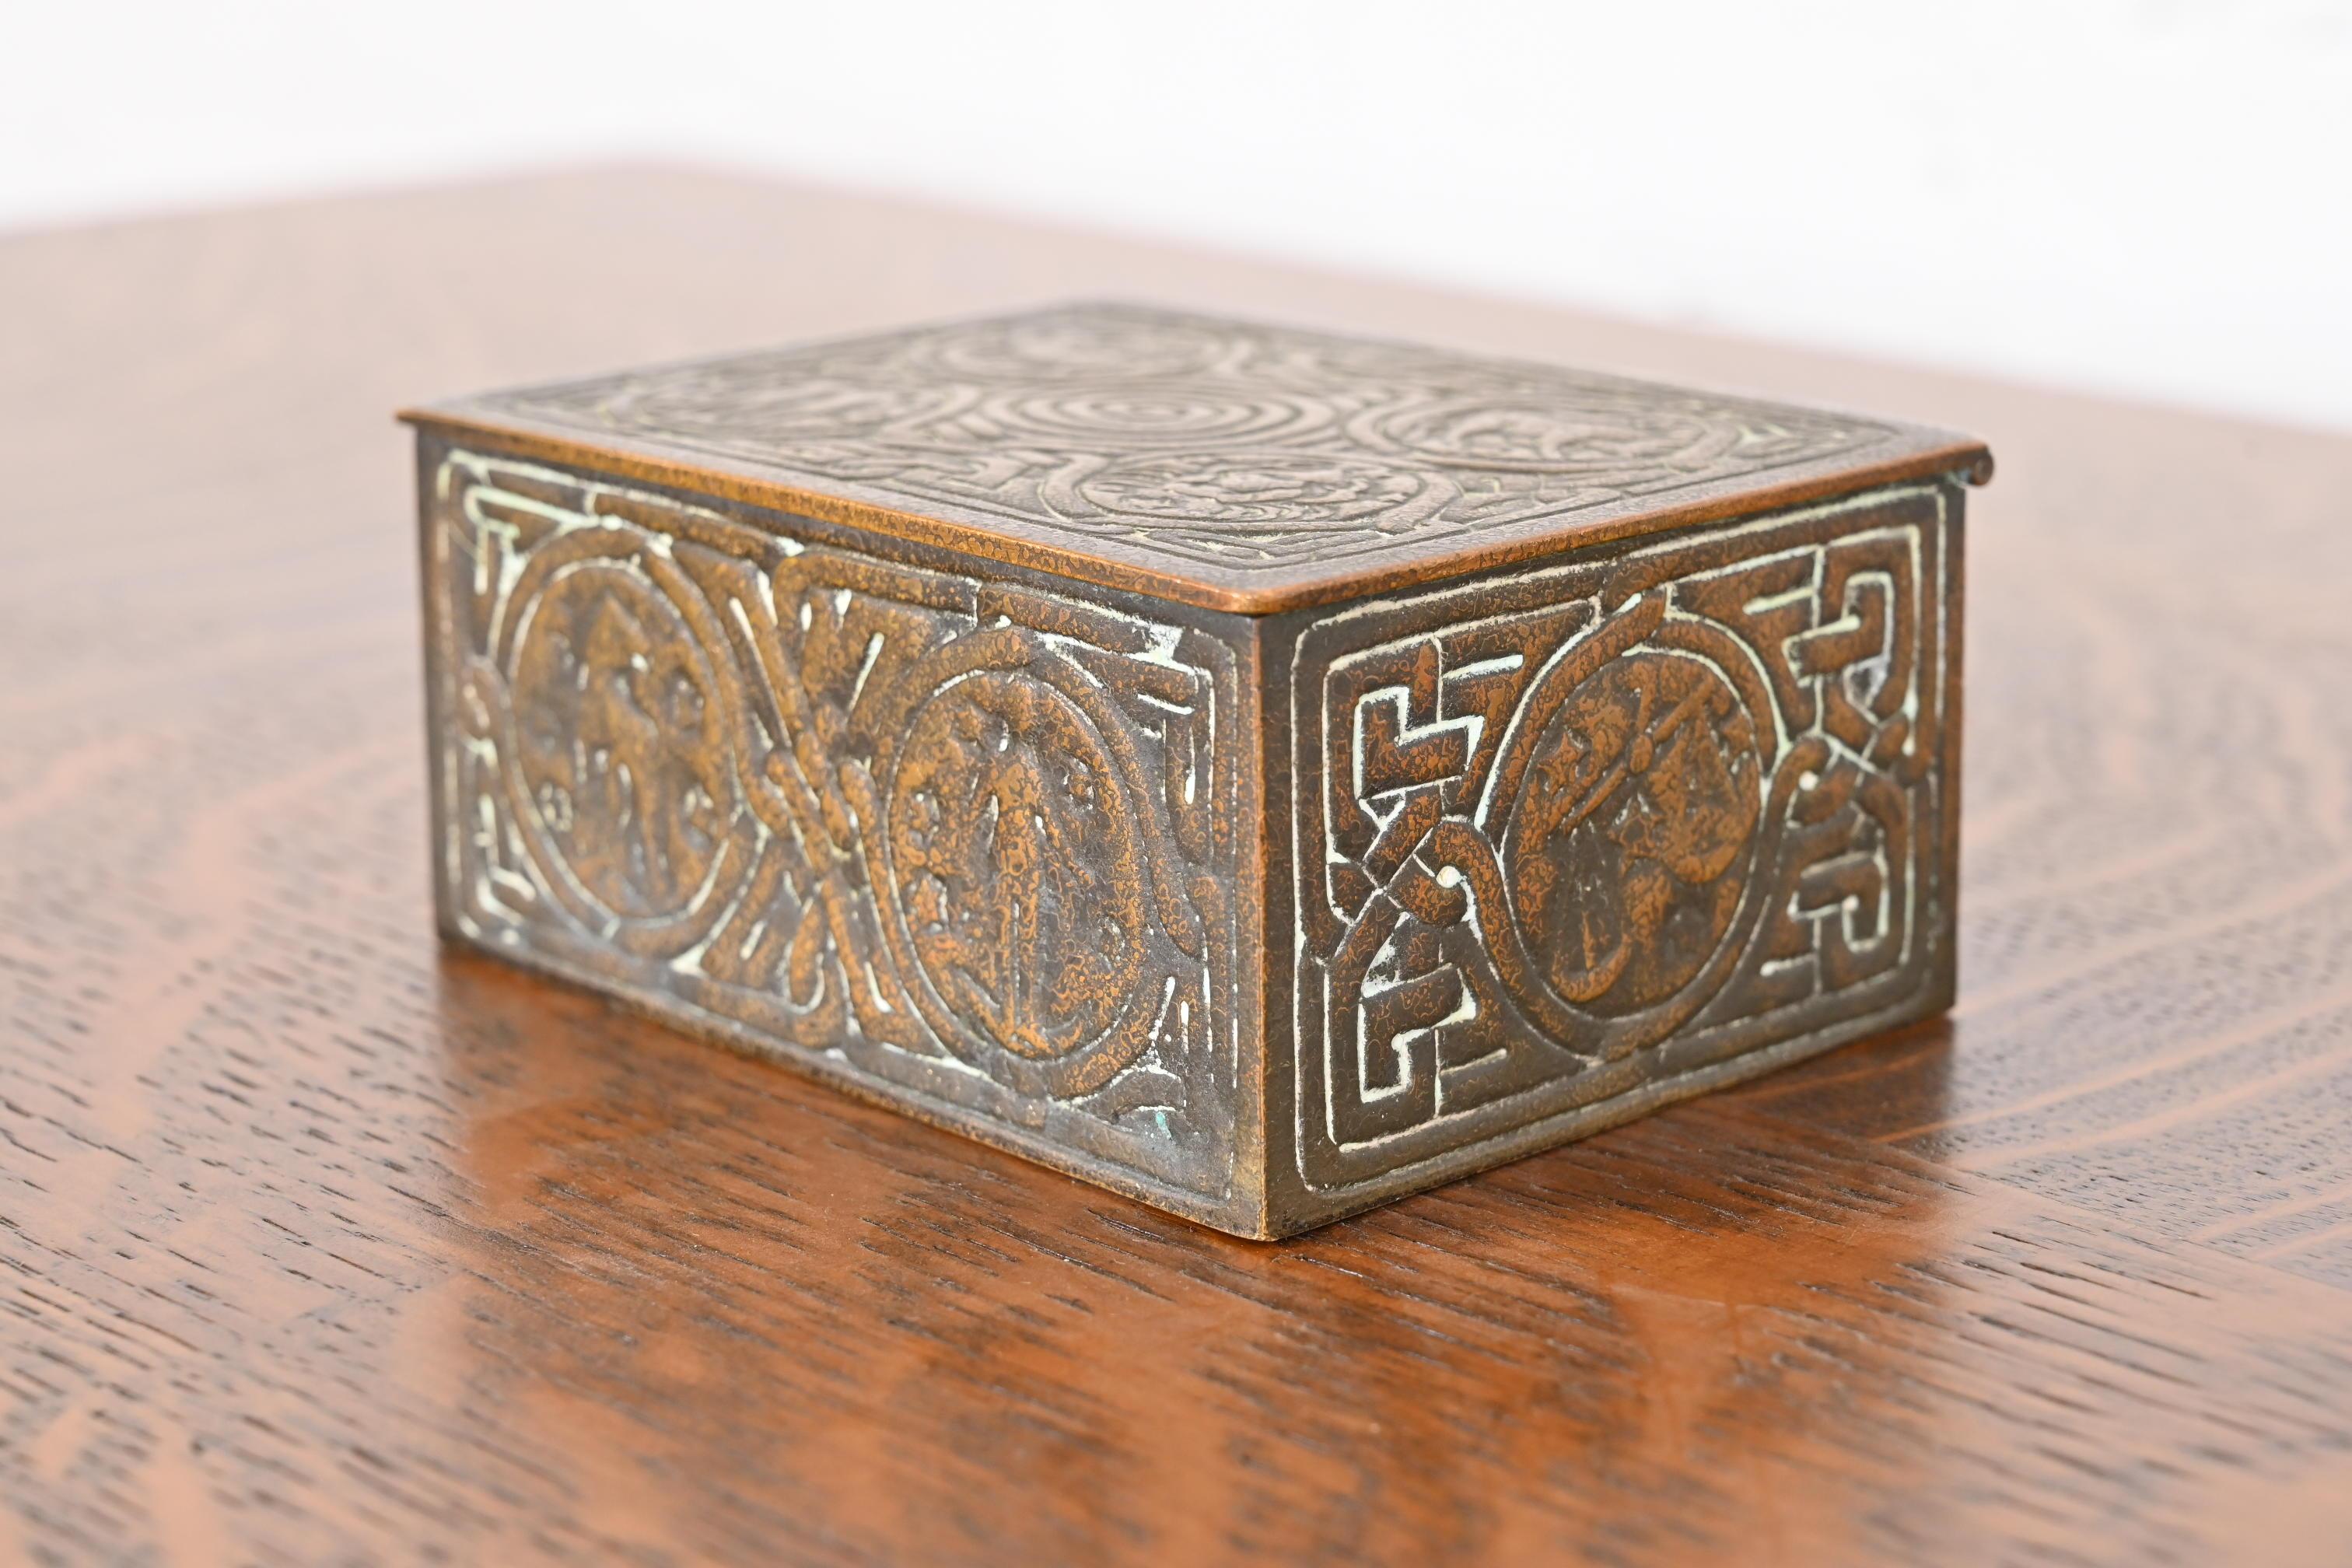 Ein wunderschönes Bronze-Schreibtischkästchen, Schmuckkästchen oder dekoratives Kästchen mit Zodiac-Motiven

Von Tiffany Studios

New York, USA, Anfang des 20. Jahrhunderts

Maße: 4,5 